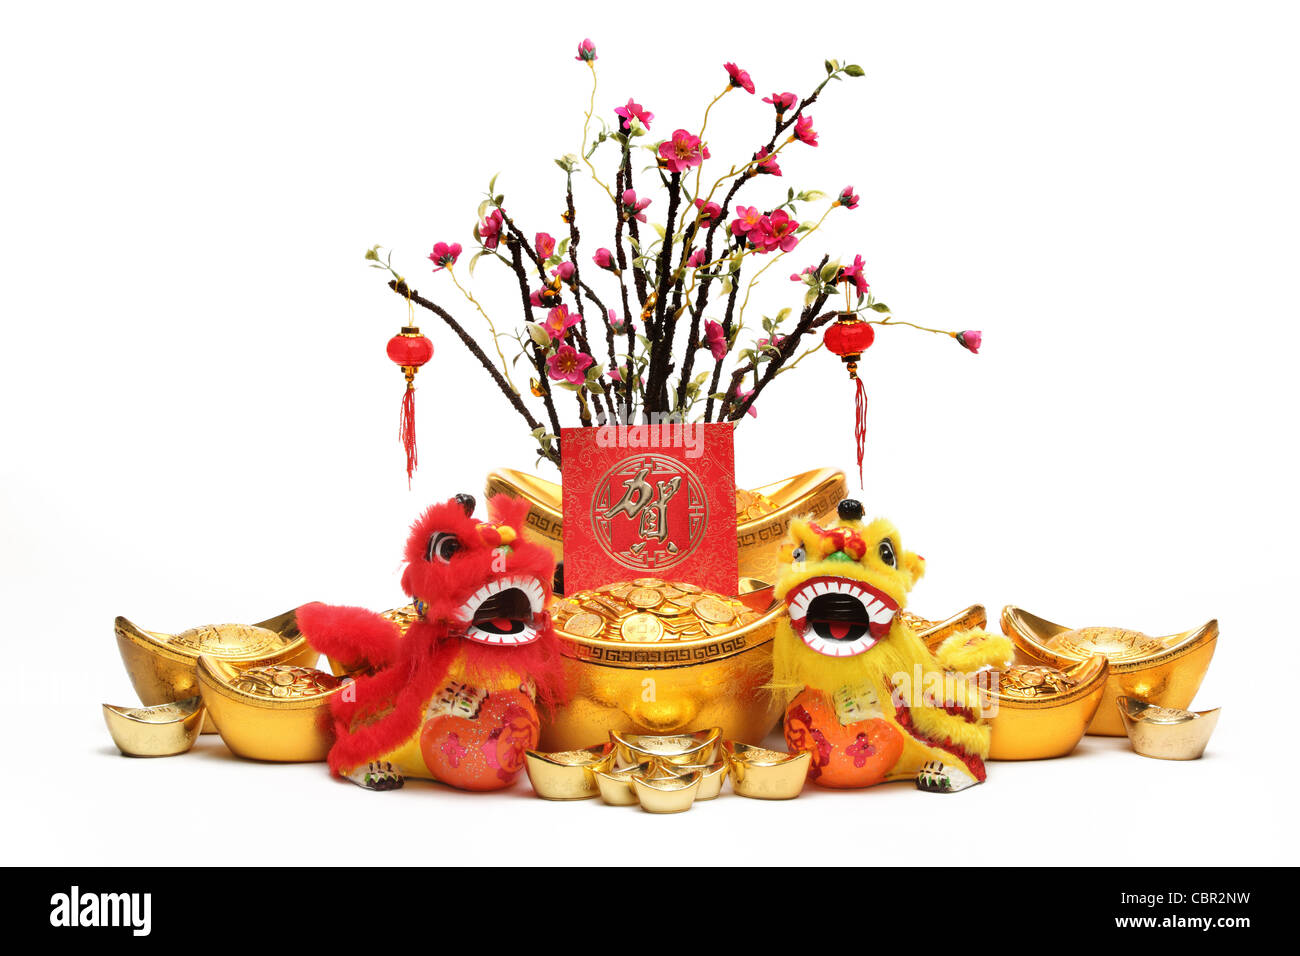 Chinese New Year Dekorationen--traditionelle tanzende Löwen, Goldbarren, rote Päckchen und Pflaumenbaum. Stockfoto